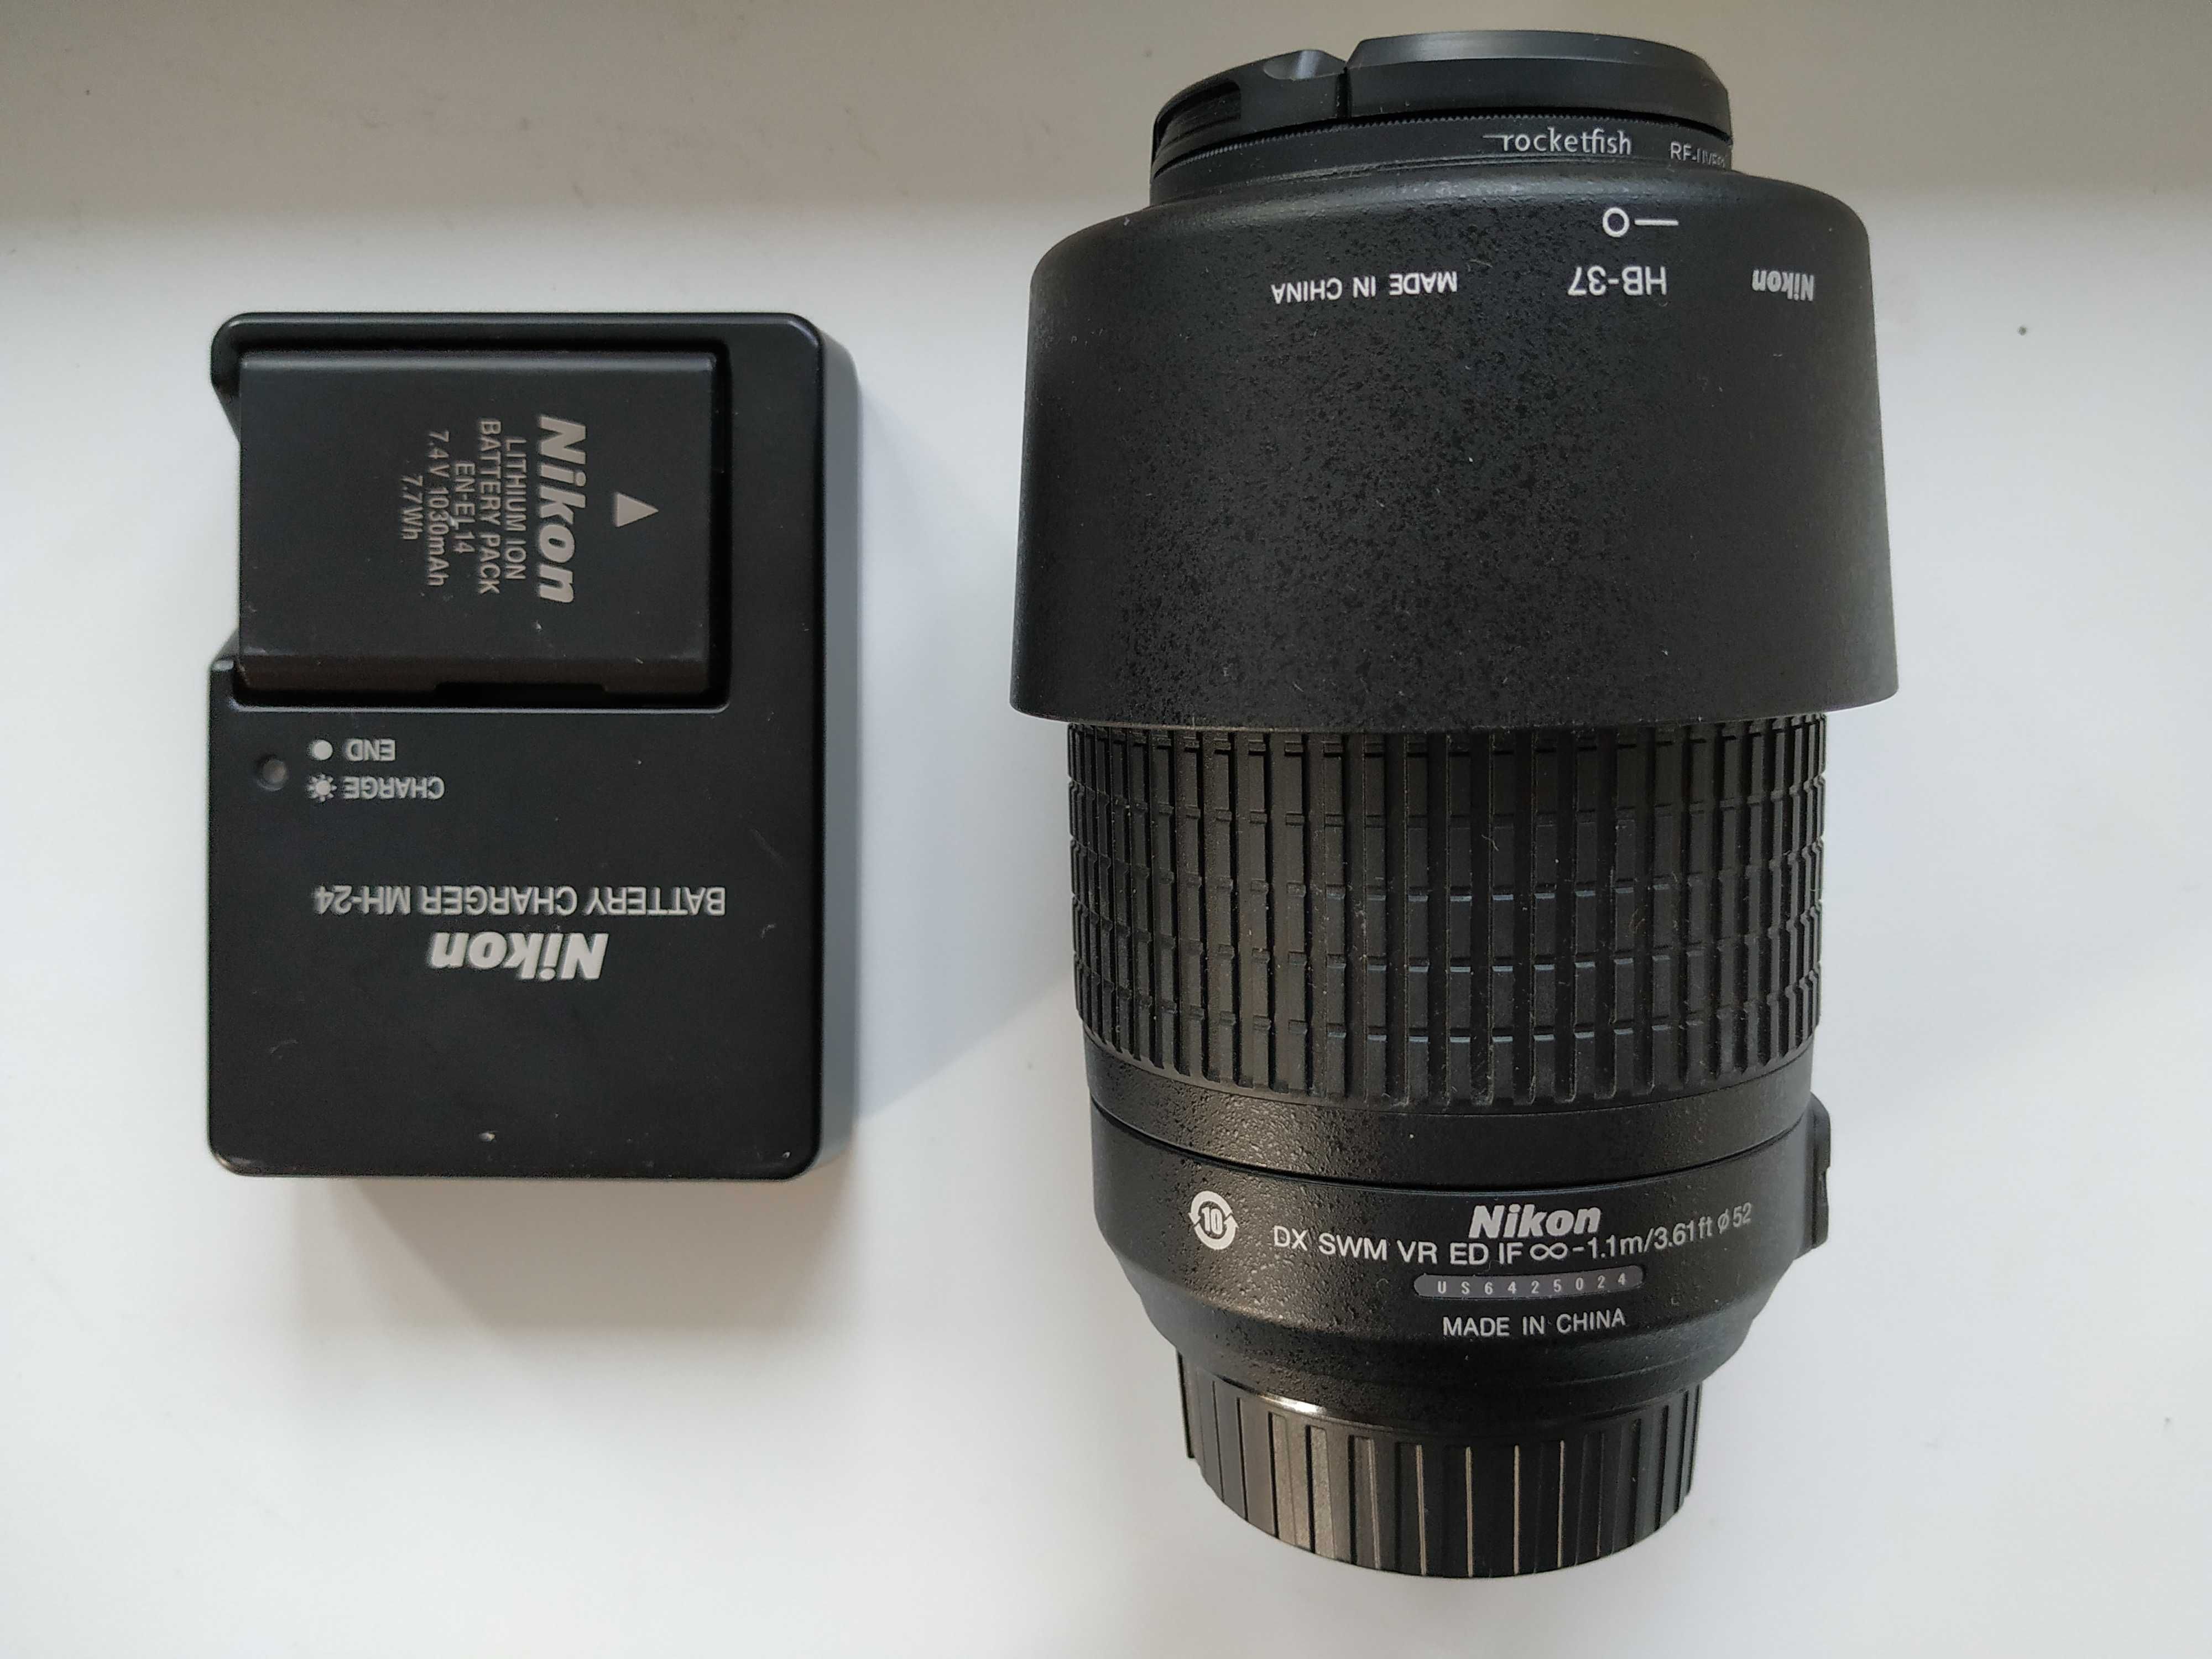 Nikon D3100 + Nikon 18-55mm f/3.5-5.6G AF-S VR II DX Zoom-Nikkor